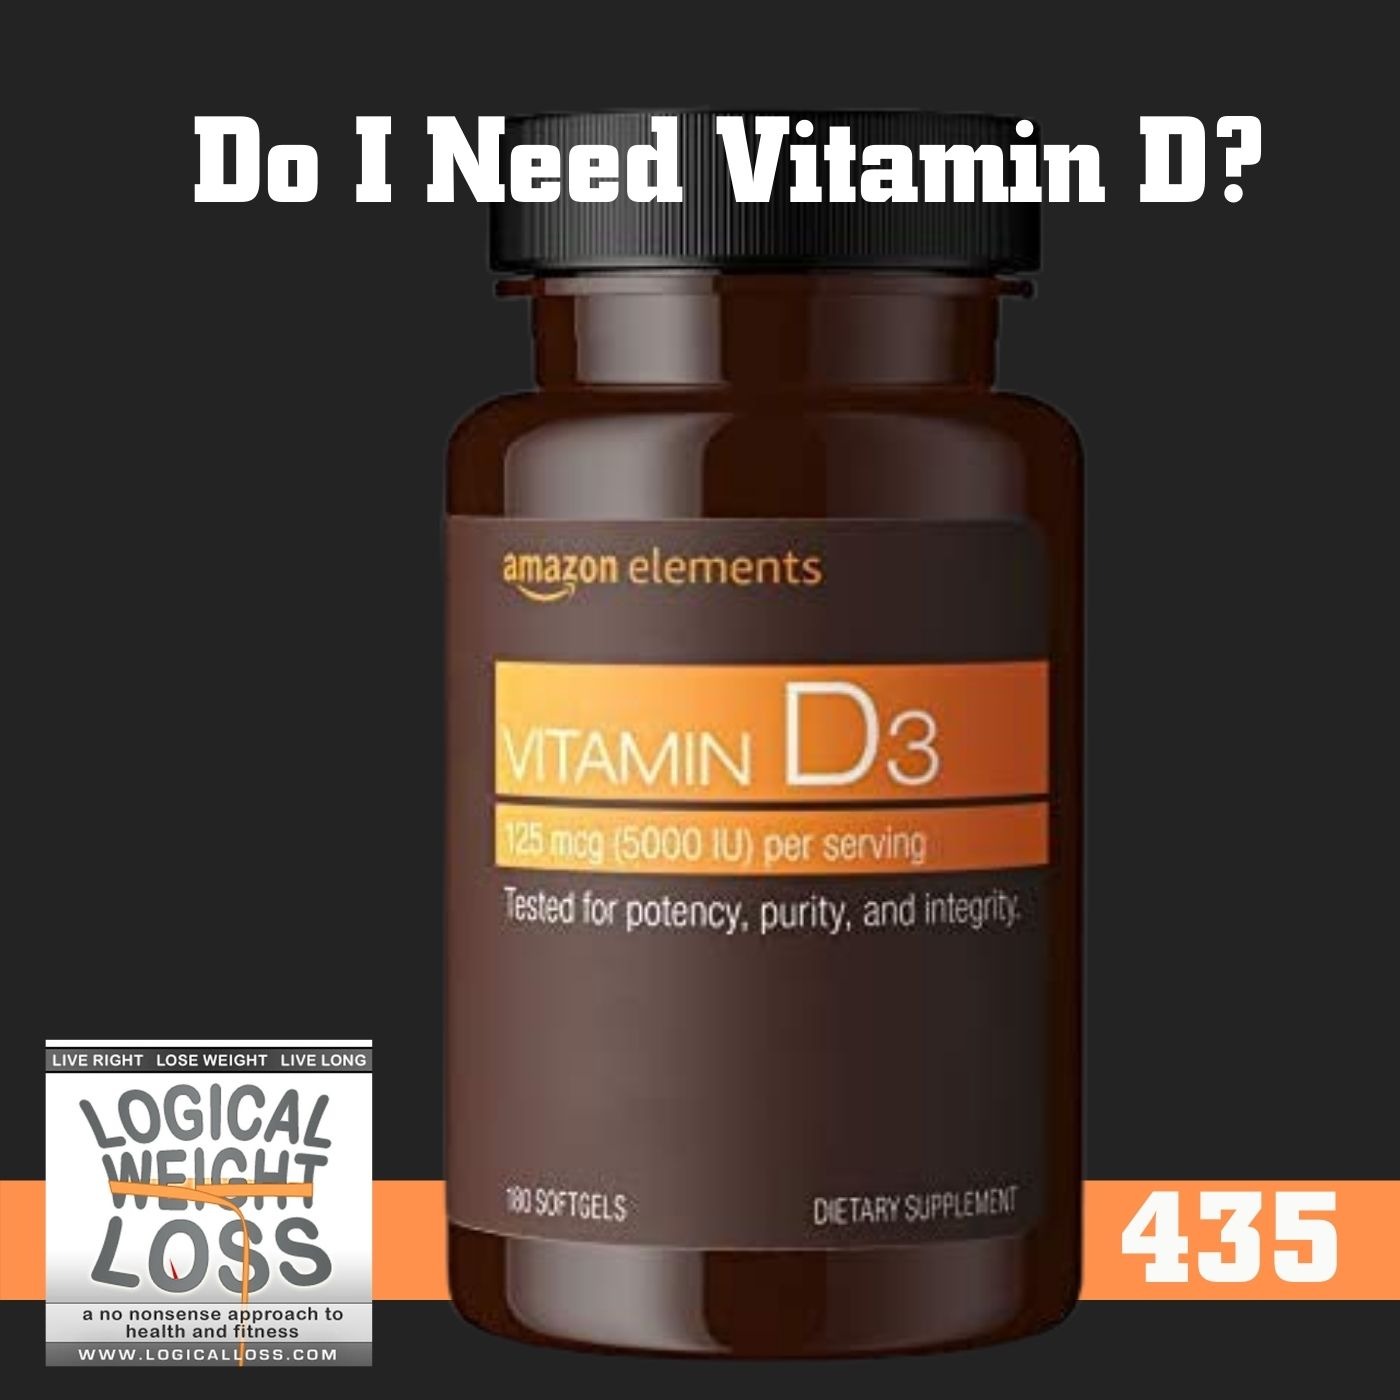 Do I Need Vitamin D? Image